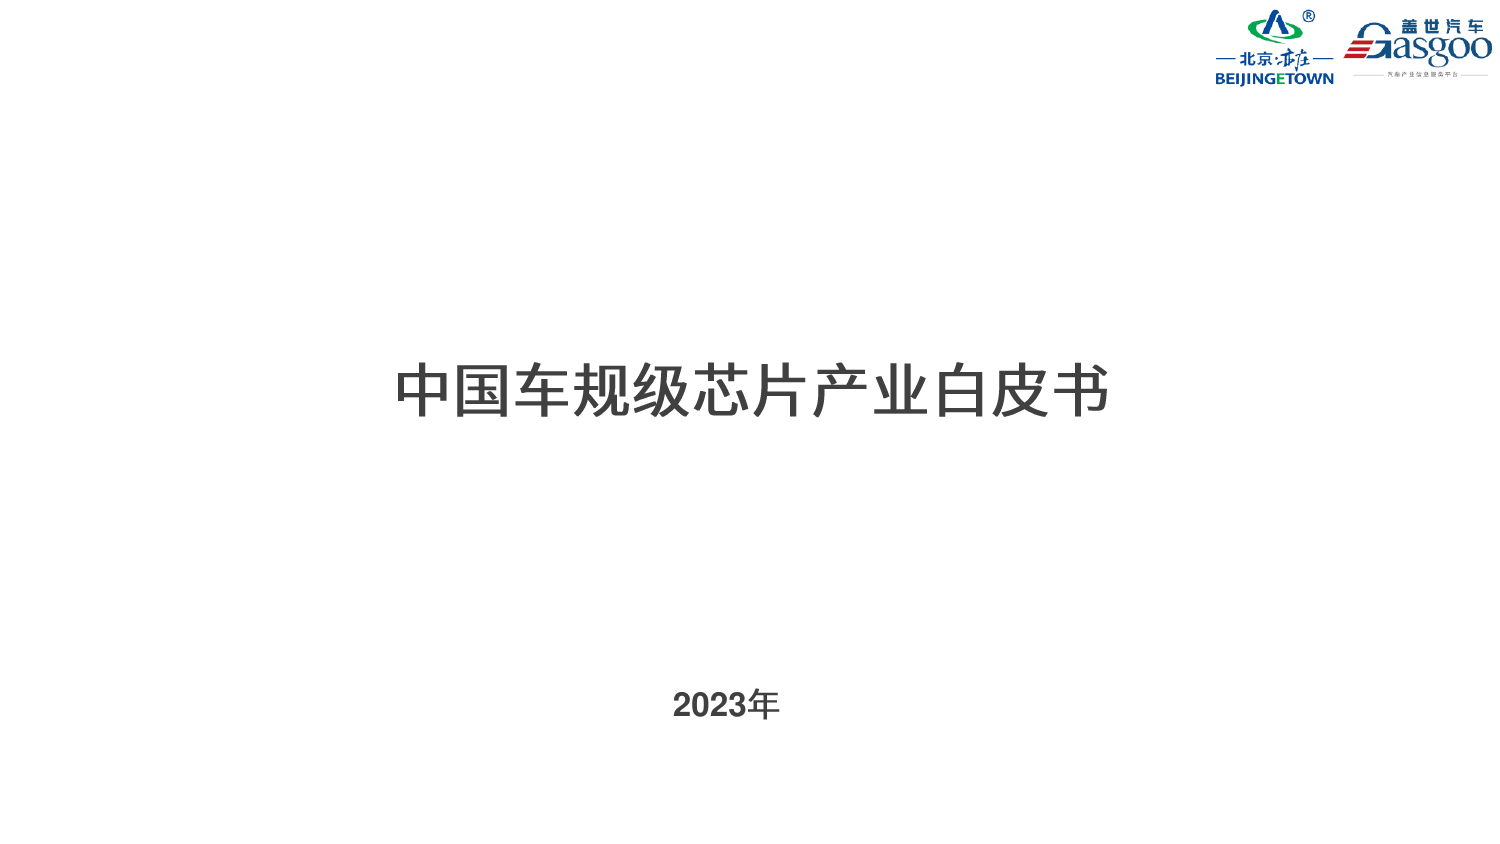 2023中国车规级芯片产业白皮书-北京亦庄-盖世汽车.pdf